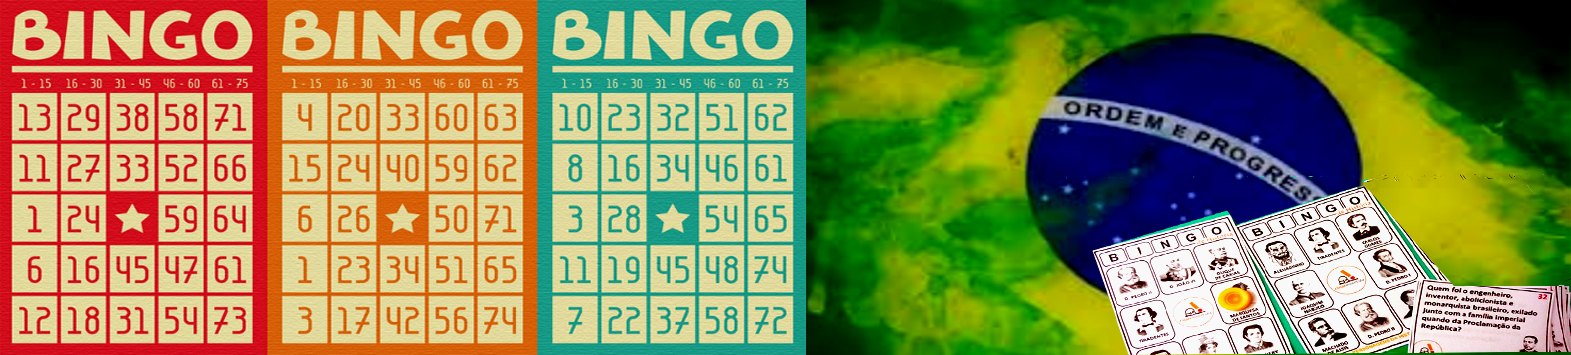 Cantar_bingo_com_regulações_em_processo_11